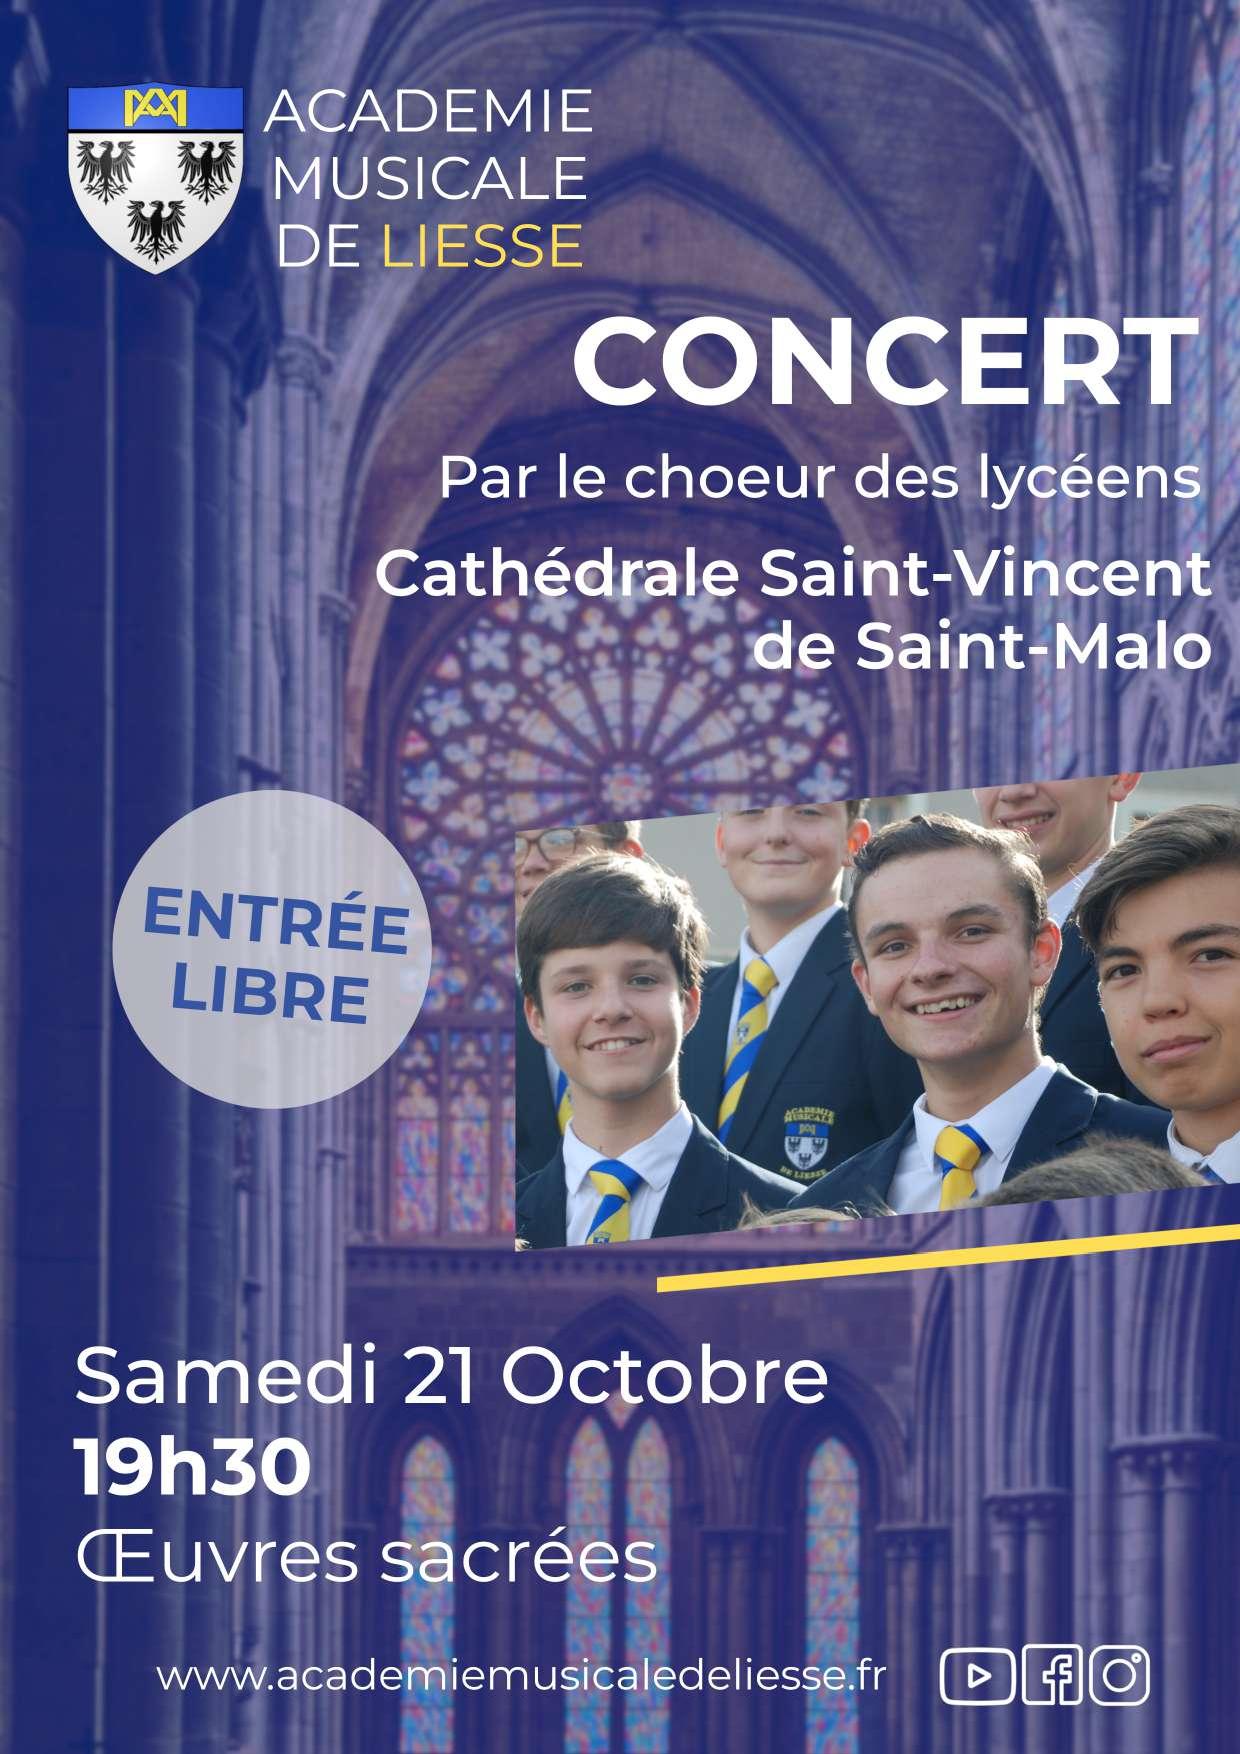 Concert Académie musicale de Liesse Saint-Malo